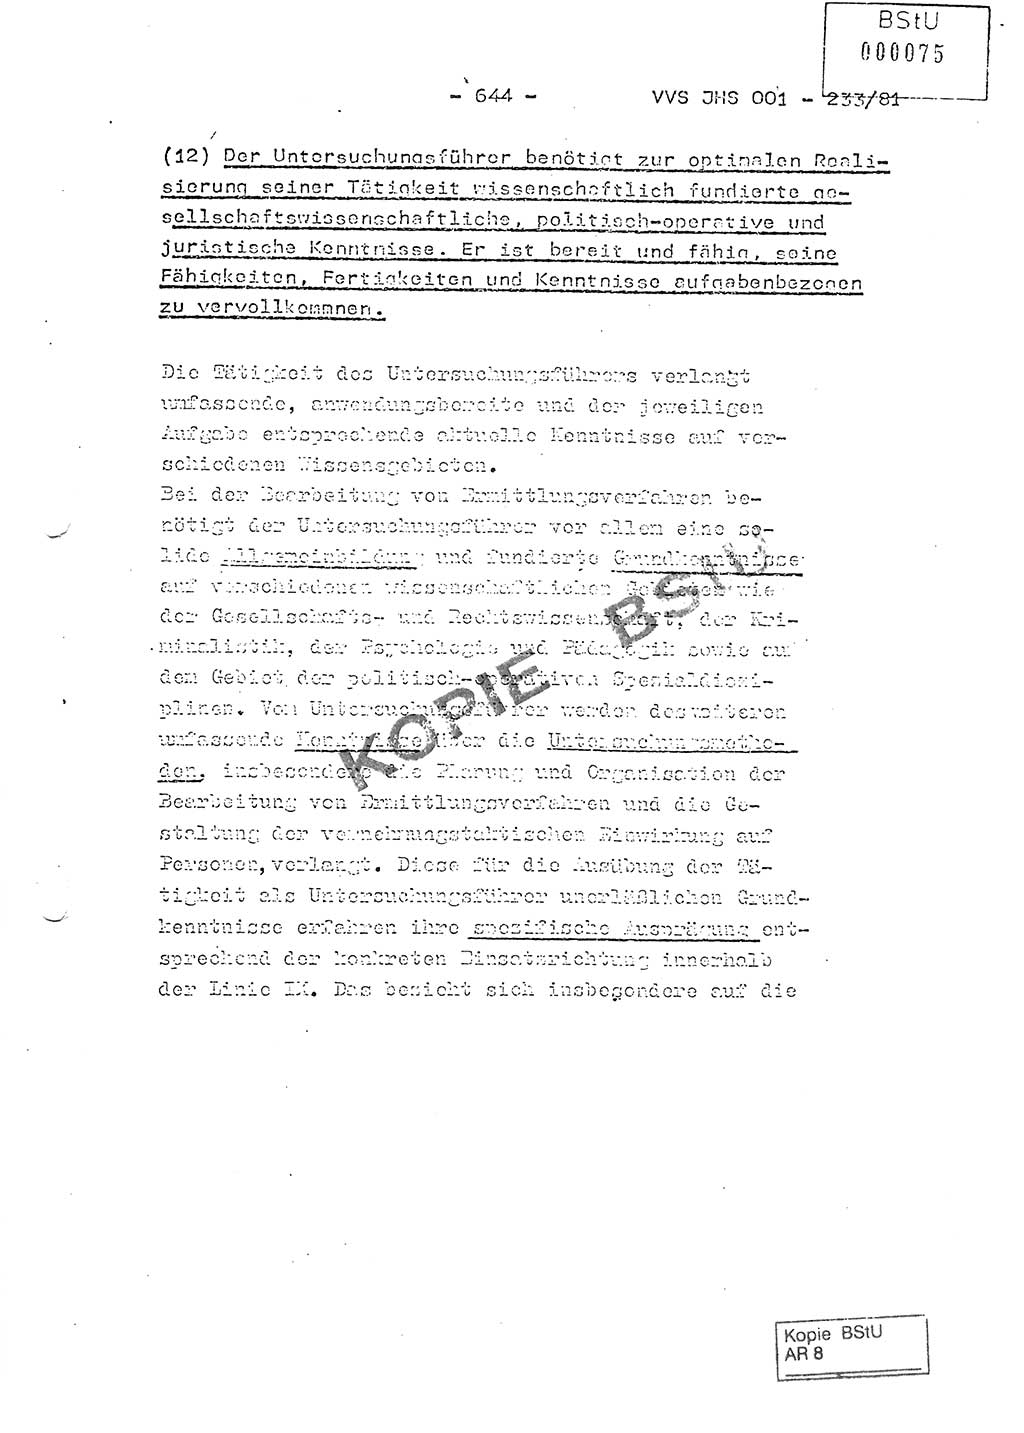 Dissertation Oberstleutnant Horst Zank (JHS), Oberstleutnant Dr. Karl-Heinz Knoblauch (JHS), Oberstleutnant Gustav-Adolf Kowalewski (HA Ⅸ), Oberstleutnant Wolfgang Plötner (HA Ⅸ), Ministerium für Staatssicherheit (MfS) [Deutsche Demokratische Republik (DDR)], Juristische Hochschule (JHS), Vertrauliche Verschlußsache (VVS) o001-233/81, Potsdam 1981, Blatt 644 (Diss. MfS DDR JHS VVS o001-233/81 1981, Bl. 644)